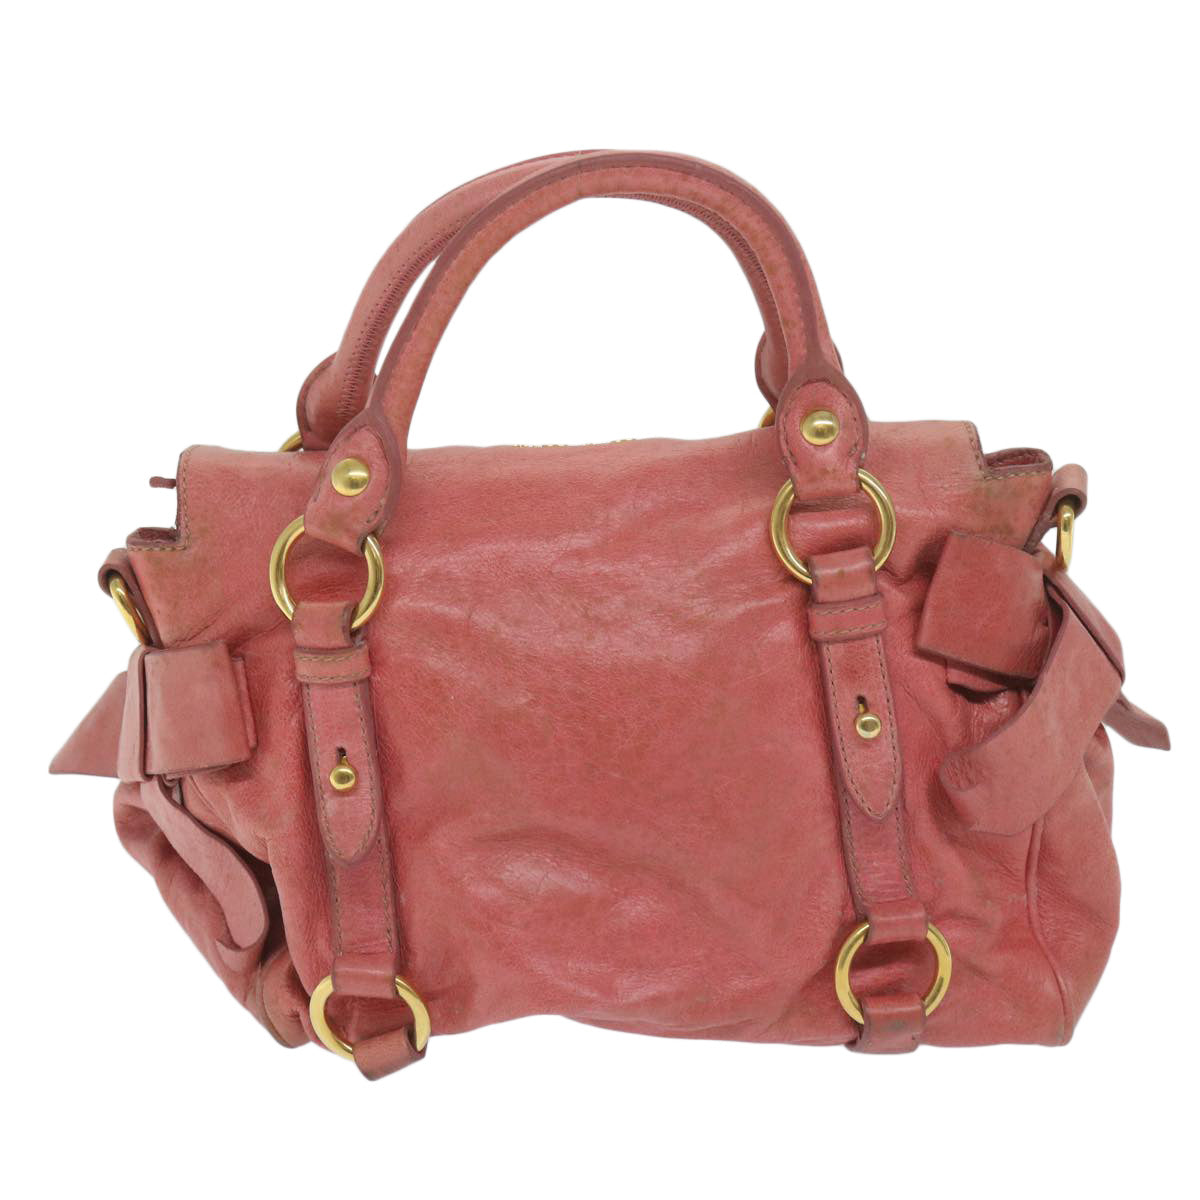 Miu Miu Hand Bag Leather 2way Pink Auth 63445 - 0